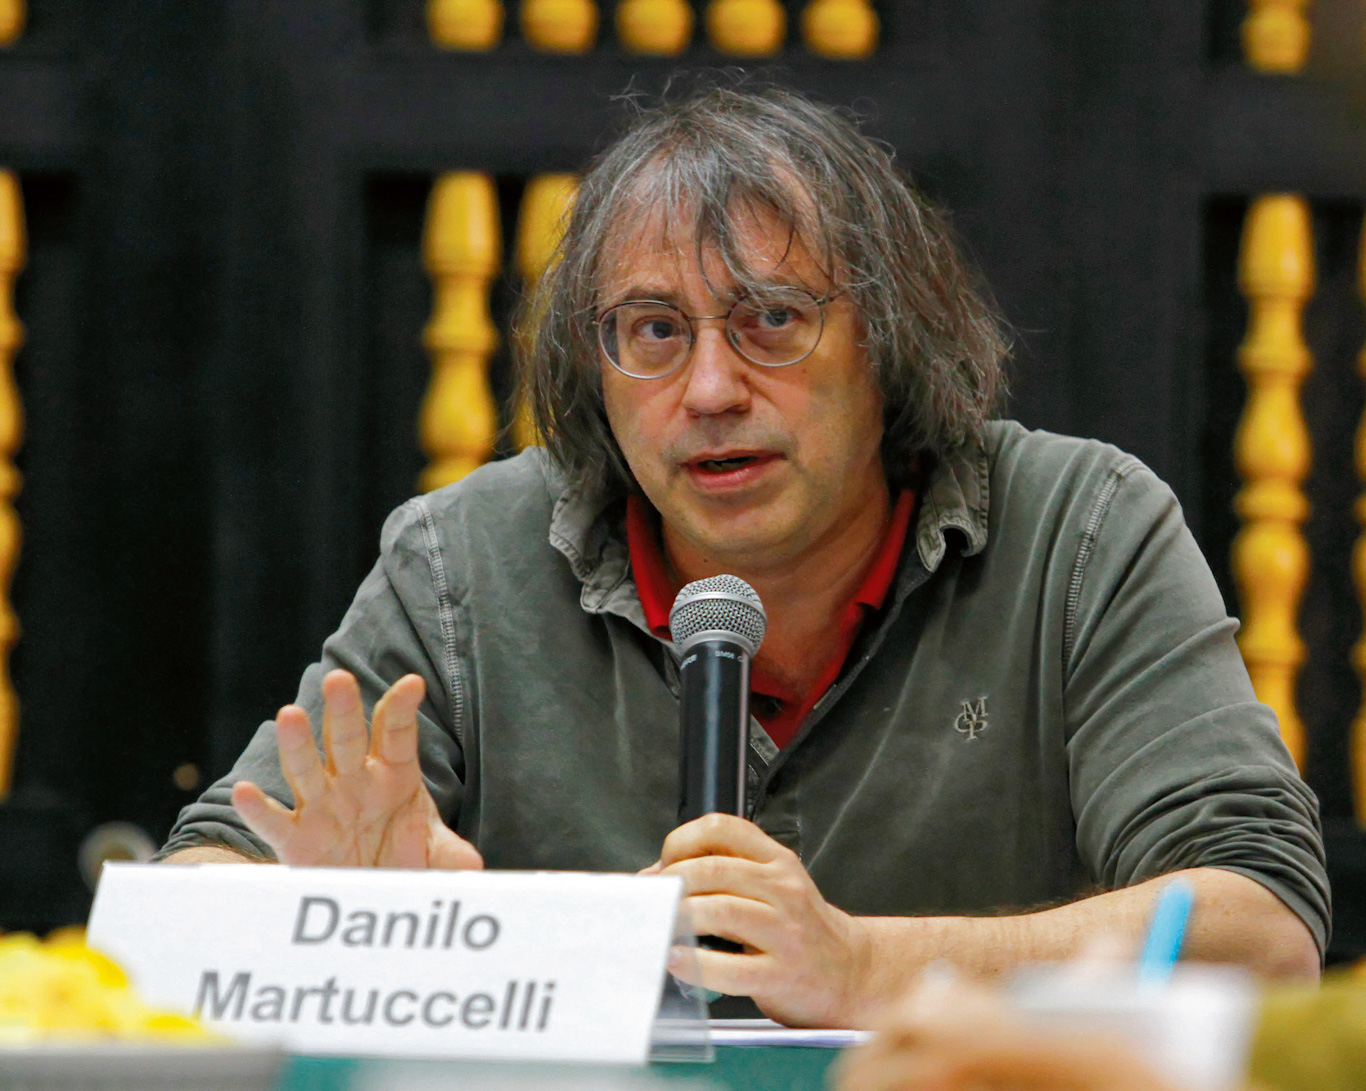 Danilo Martuccelli